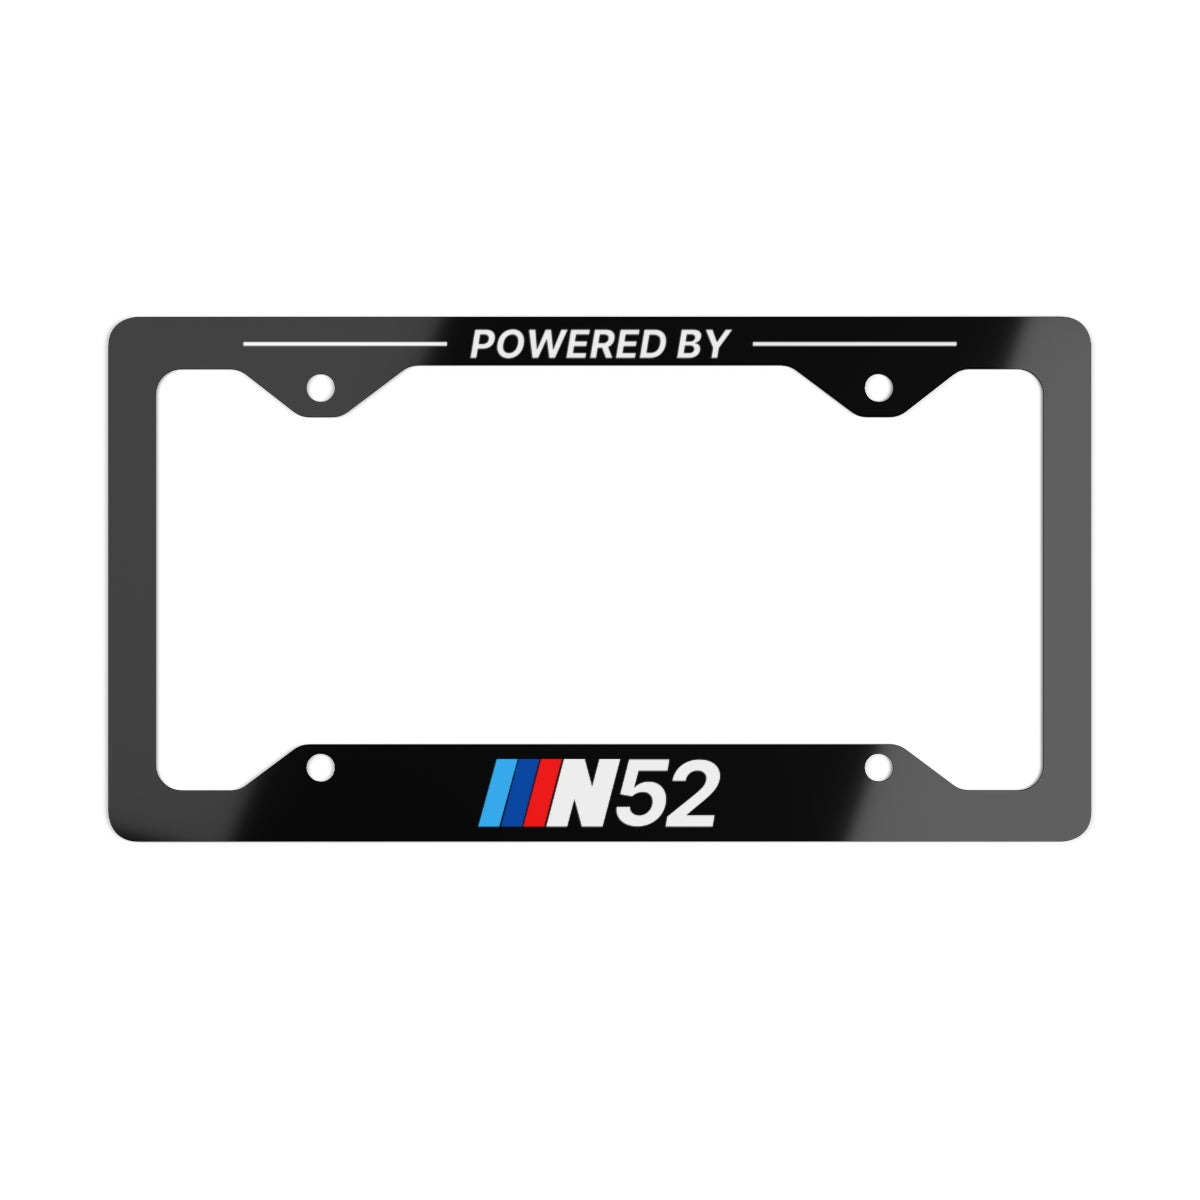 Powered By N52 Metal License Plate Frame